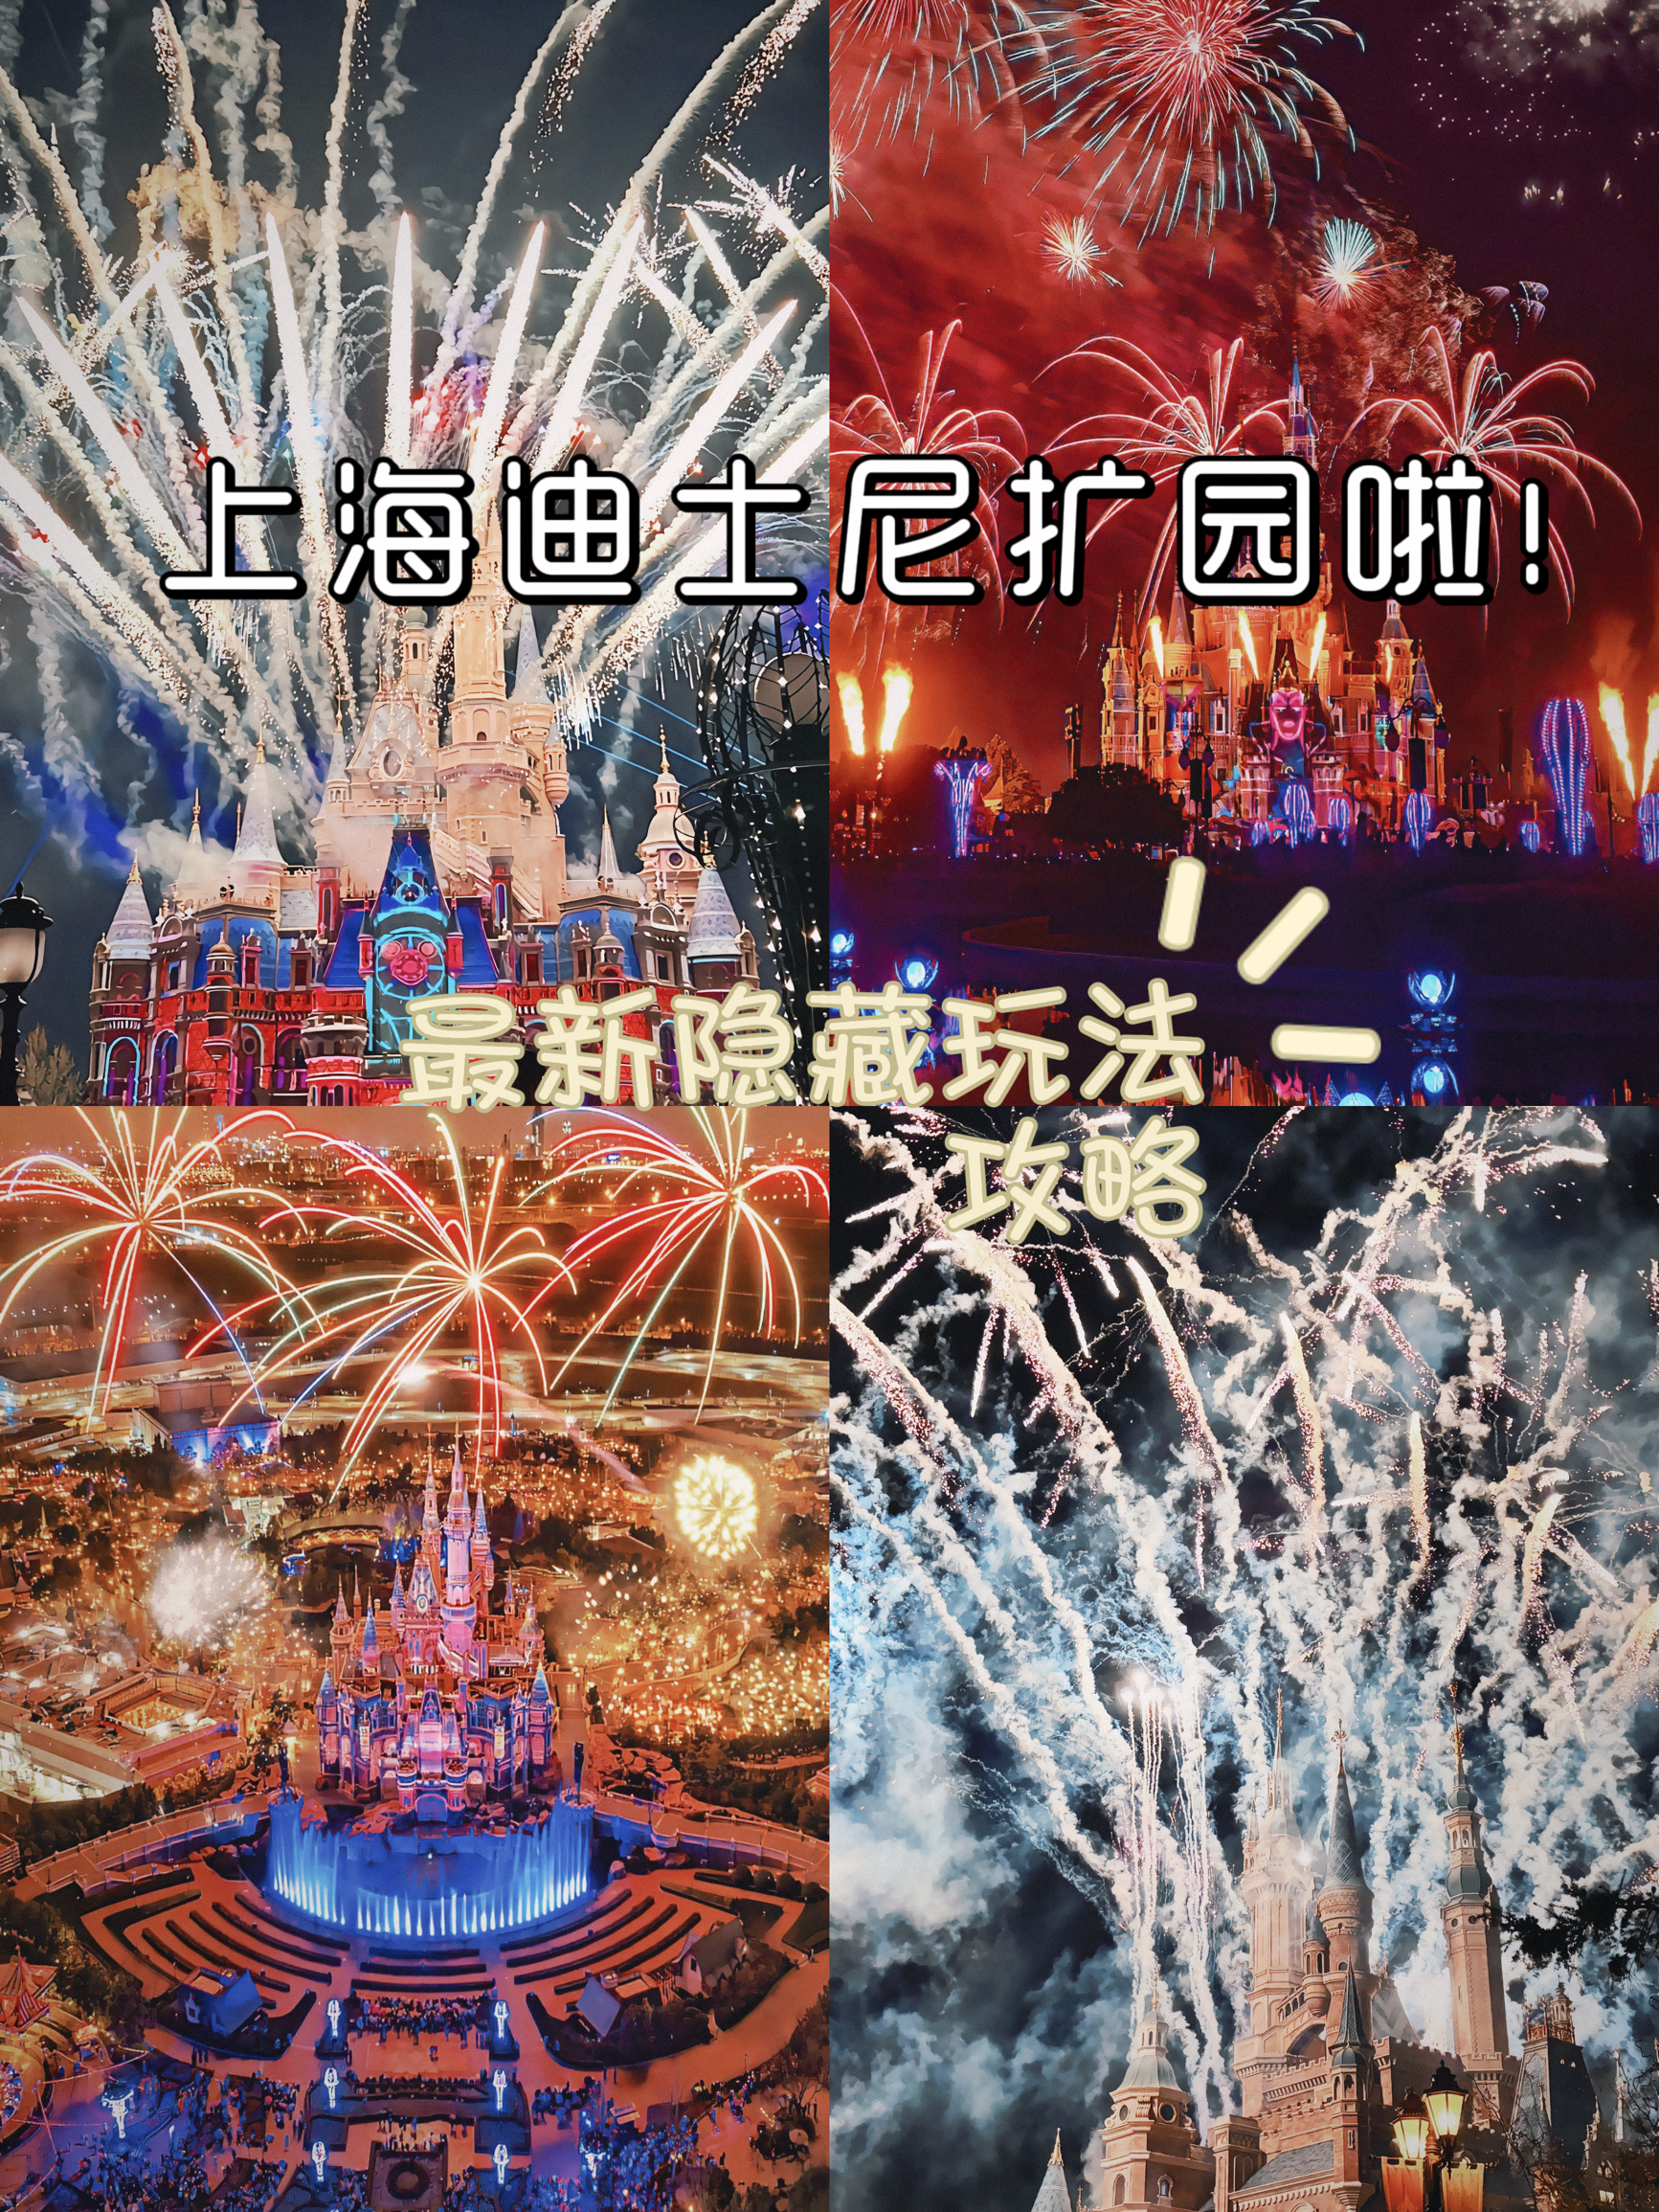 最新保姆级攻略在图片后几张  #上海迪士尼将扩建新景点 #上海迪士尼旅游攻略